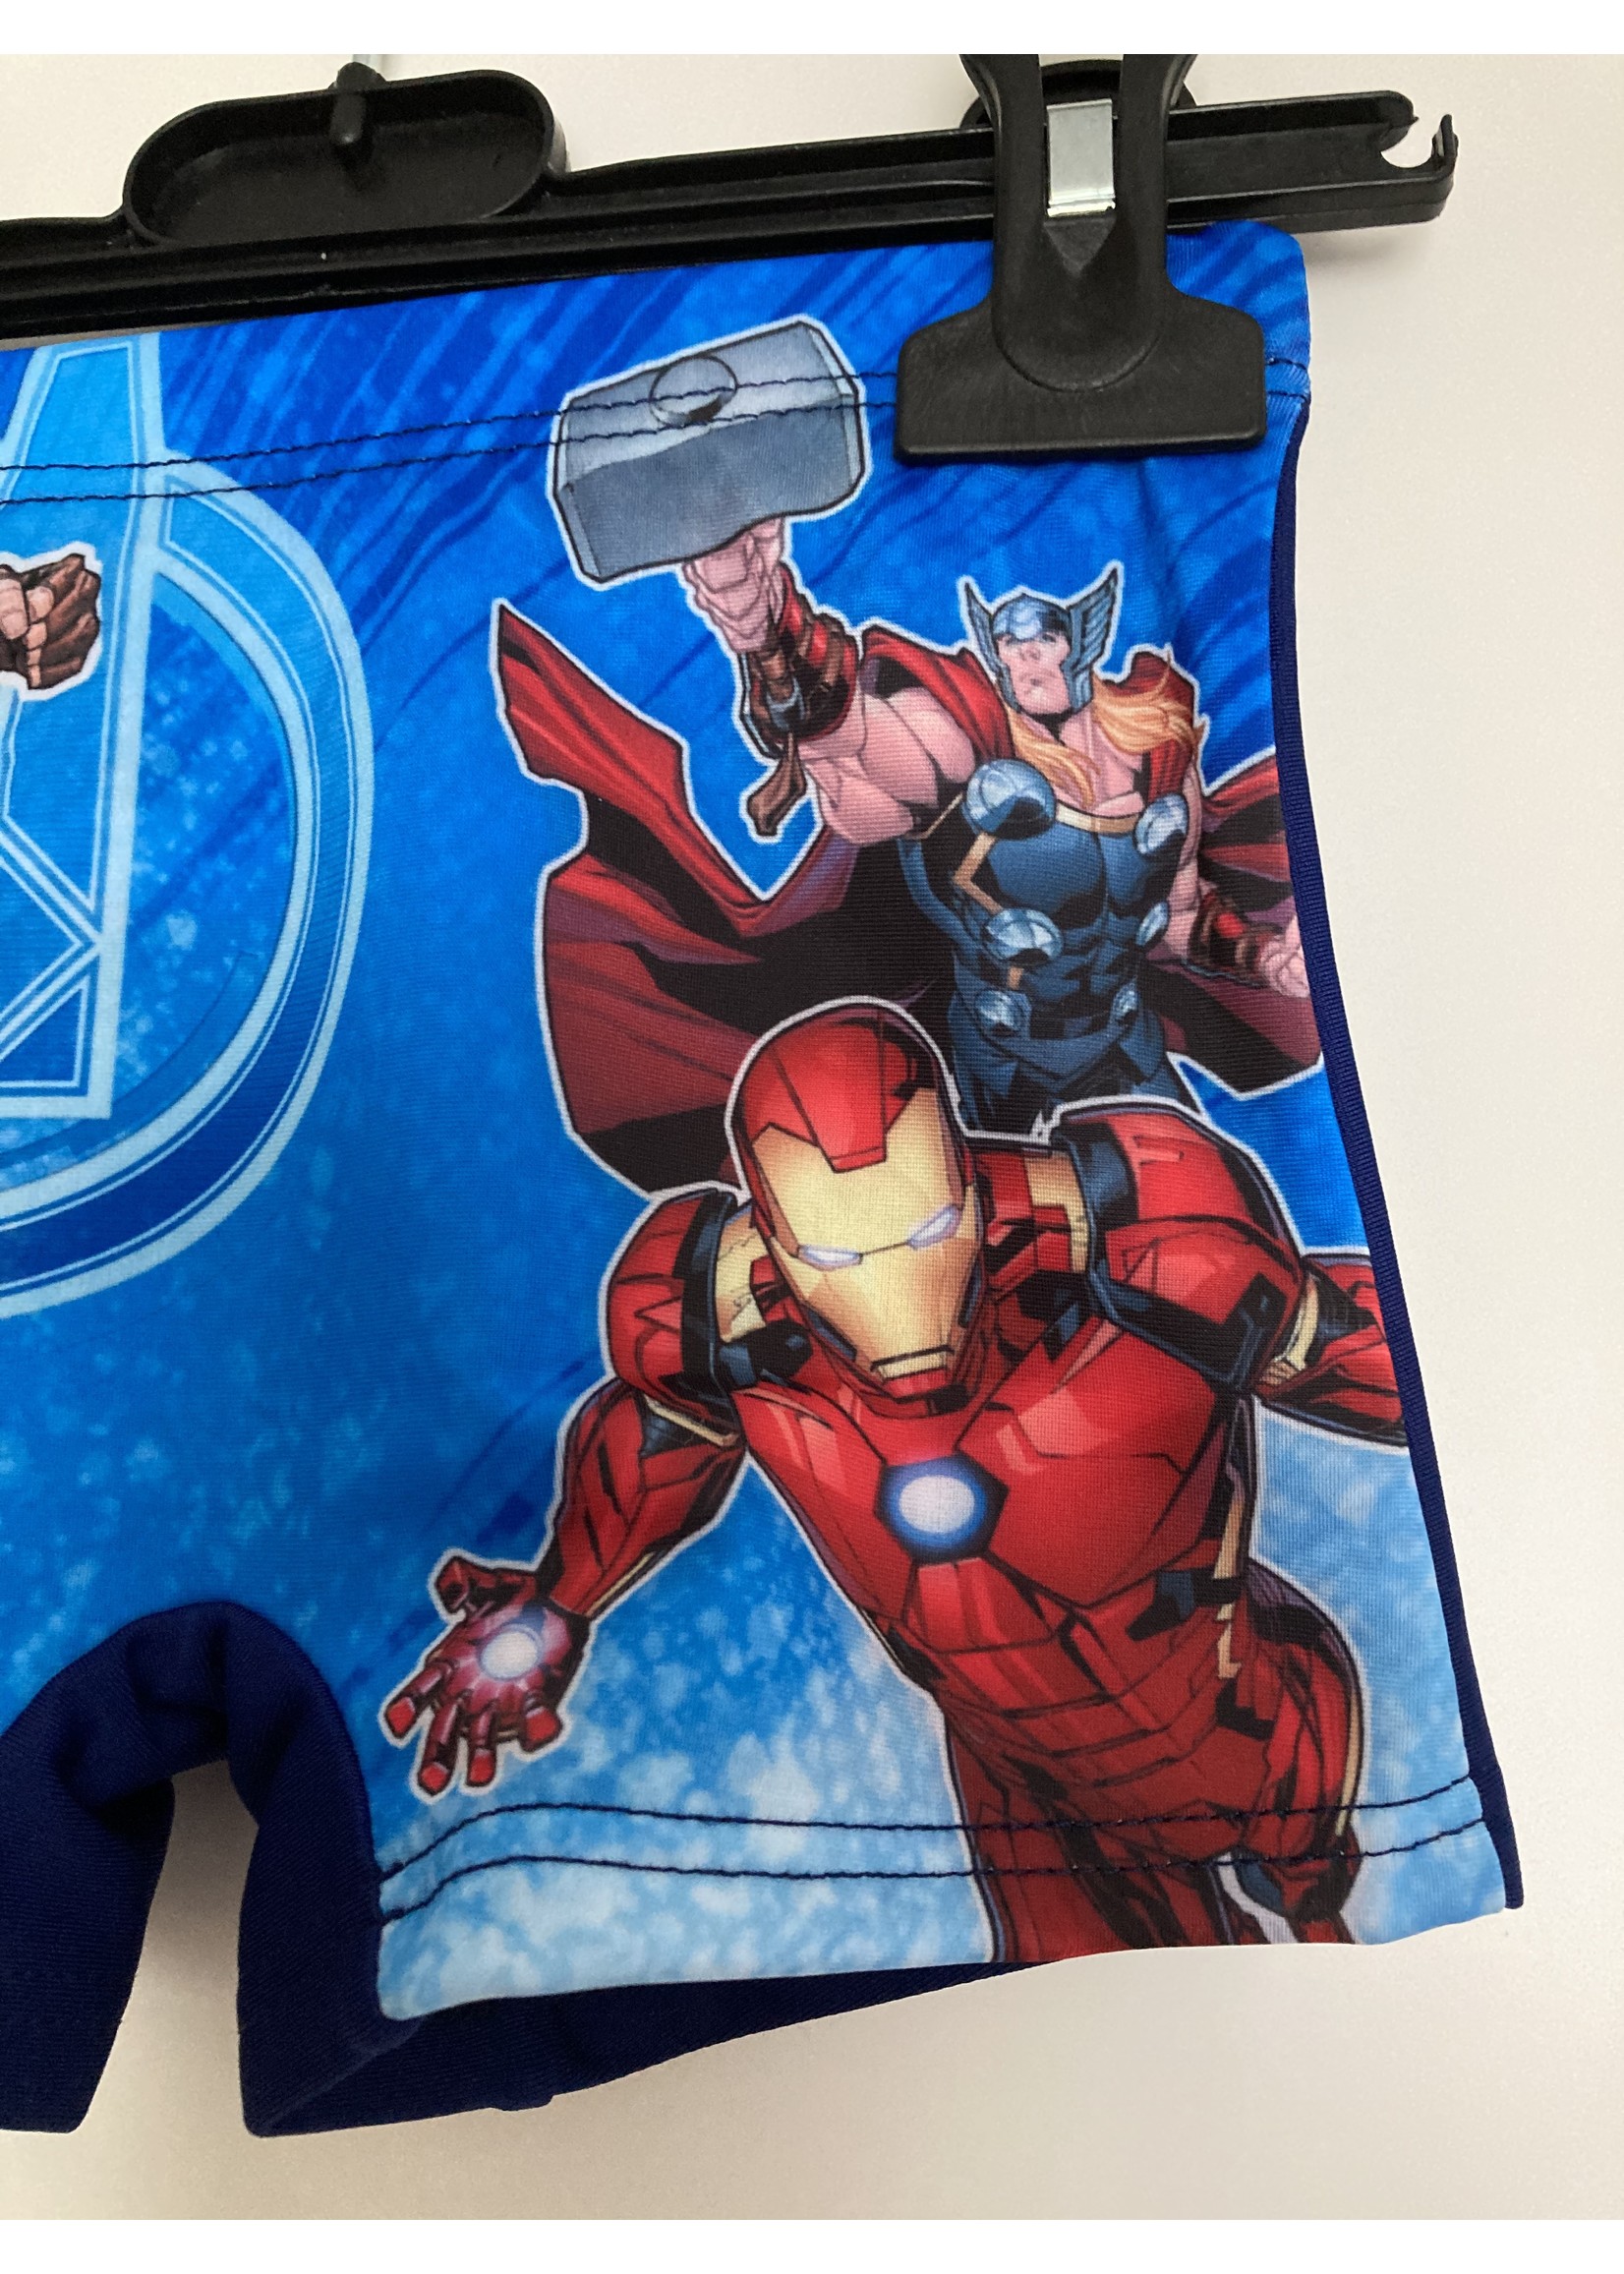 Marvel Avengers swim trunks from Marvel navy blue